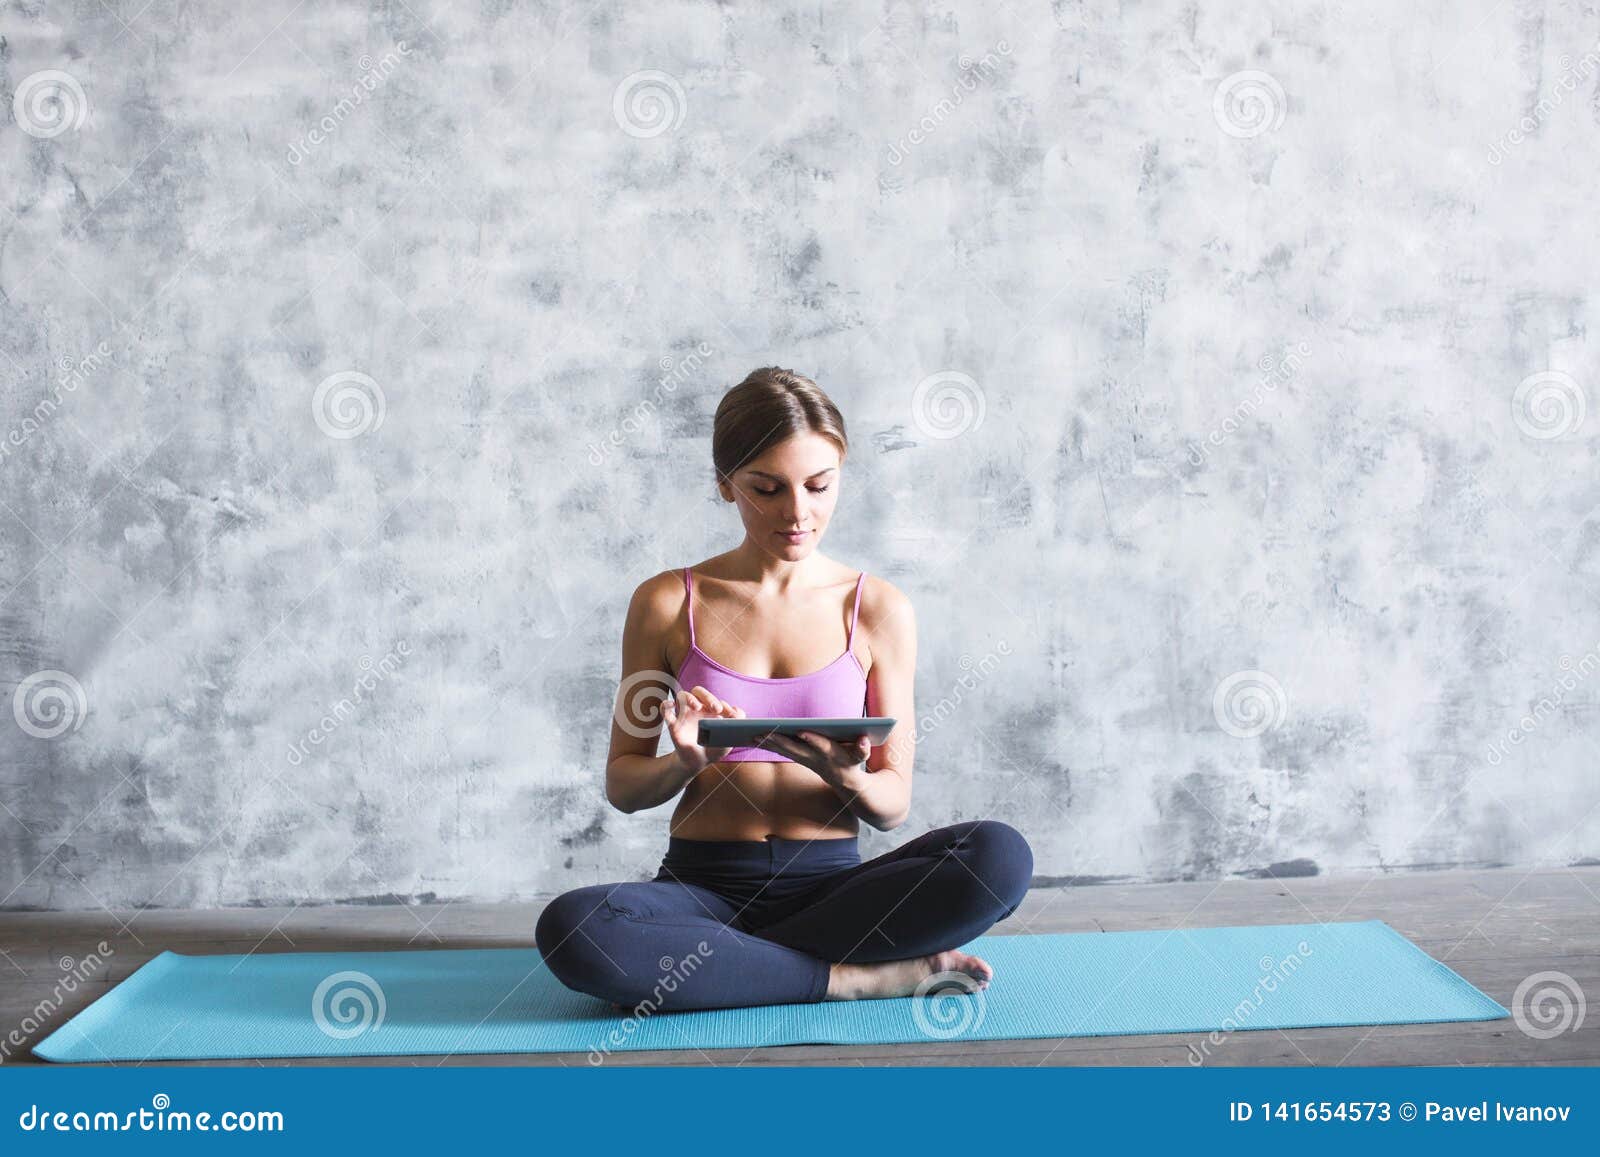 digital yoga mat